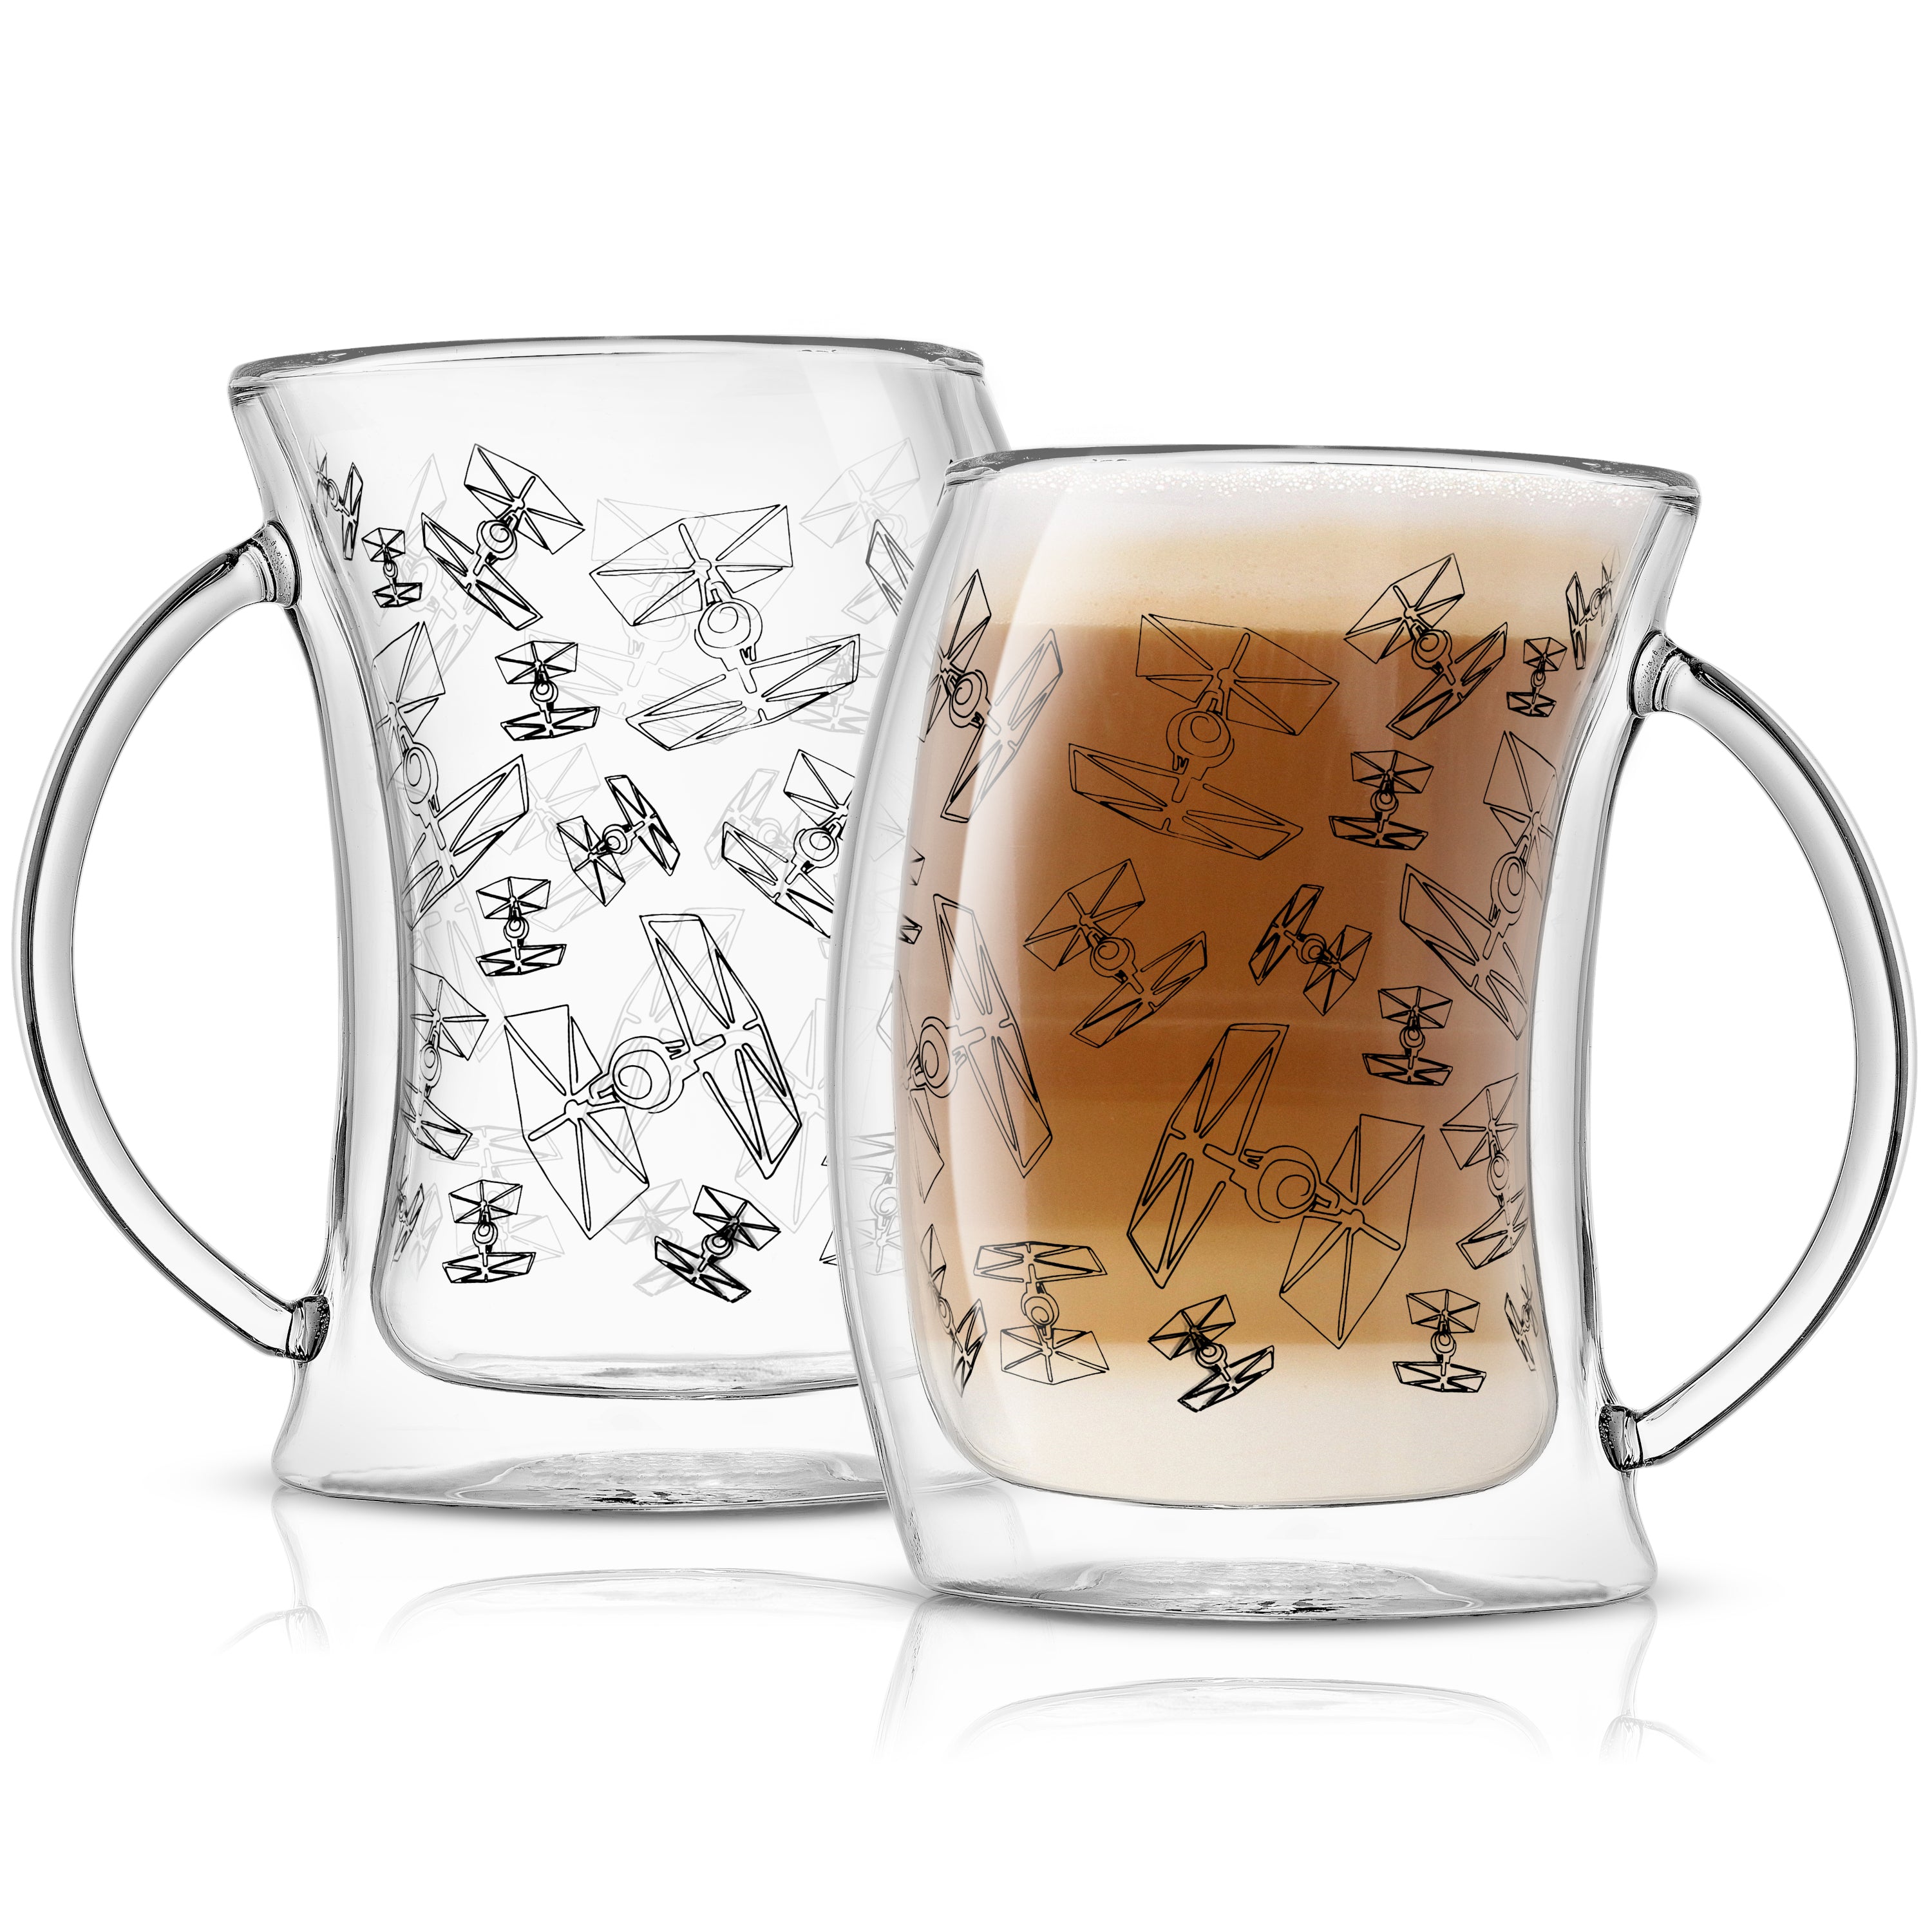 Boba Fett Mug or Libbey Glass Cup 